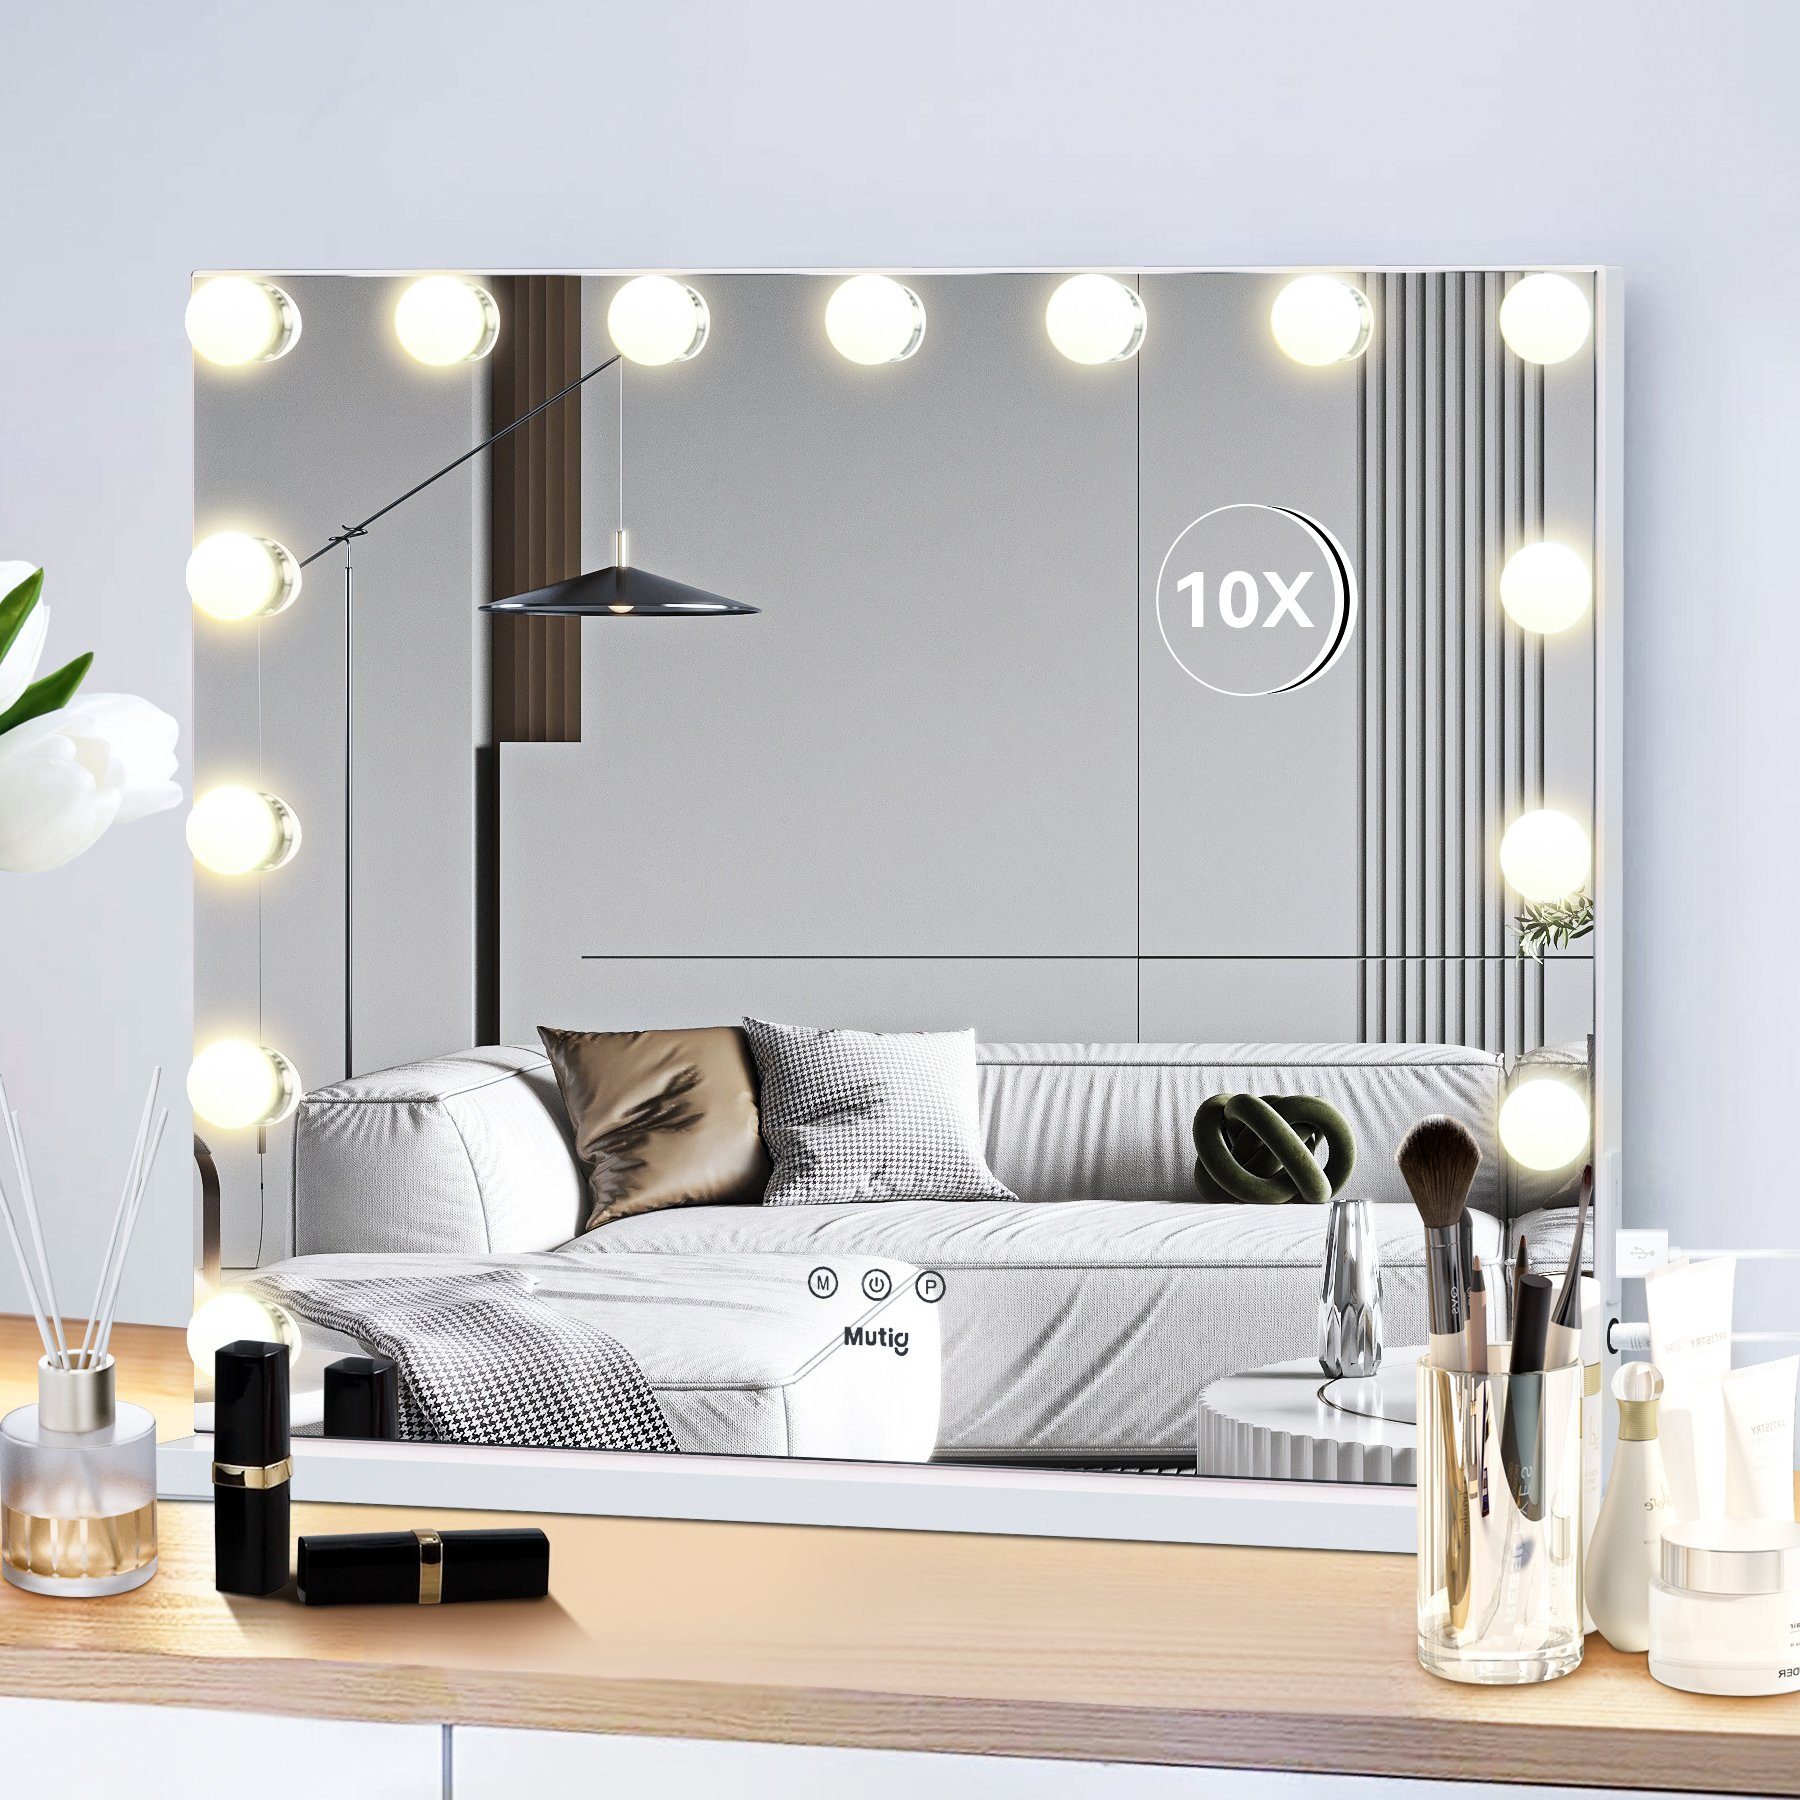 iceagle Kosmetikspiegel Schminkspiegel mit Beleuchtung, Hollywood Spiegel  mit (12 Dimmbare LED Licht, 3 Farbtemperatur Licht, Touch Control), 360  Grad Drehung, Spiegel mit Beleuchtung